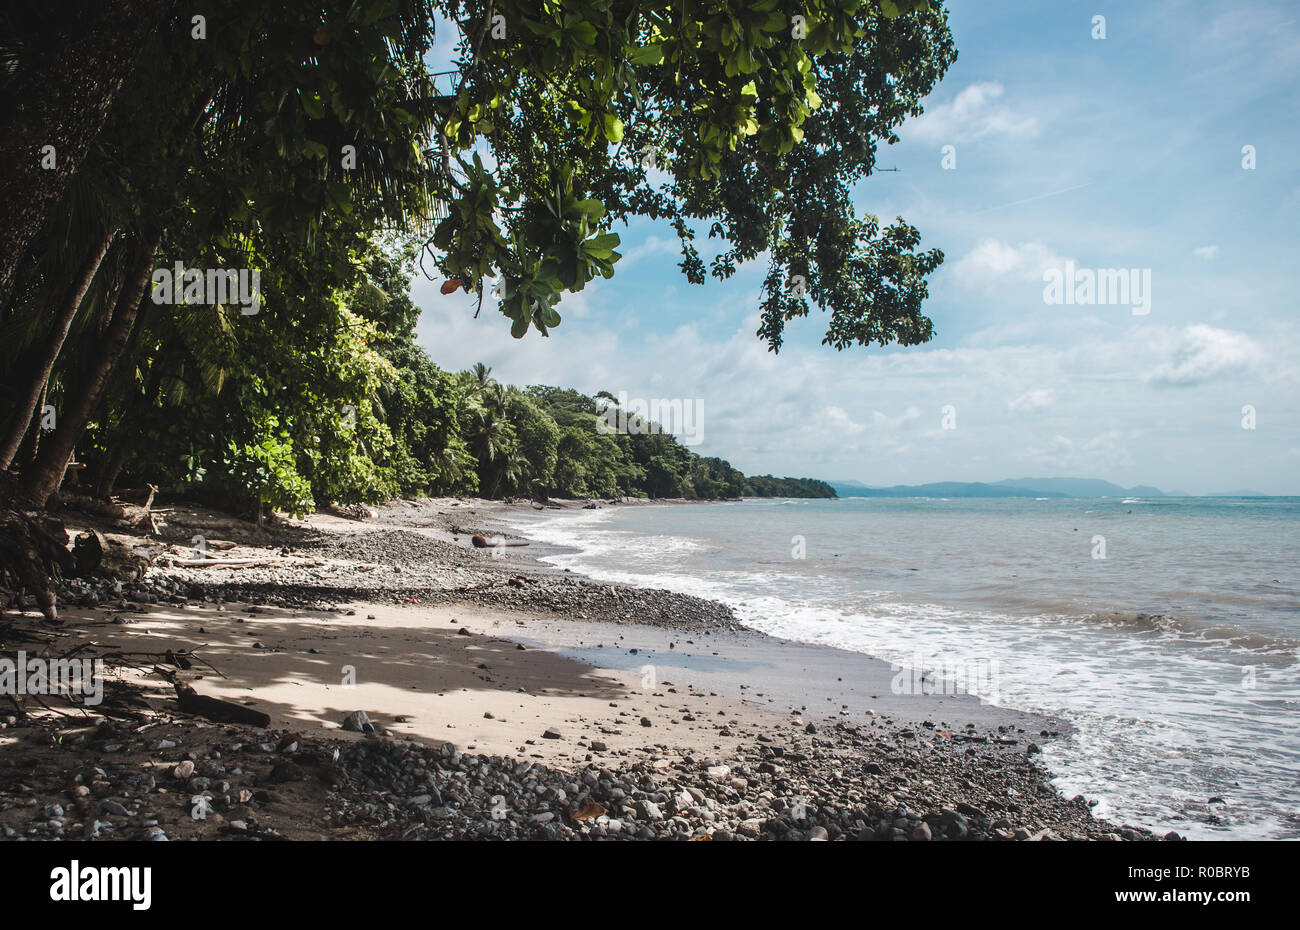 Forêt dense cède la place à une plage de galets sur le cap de la Péninsule de Nicoya au Costa Rica, près de Manzanillo Banque D'Images